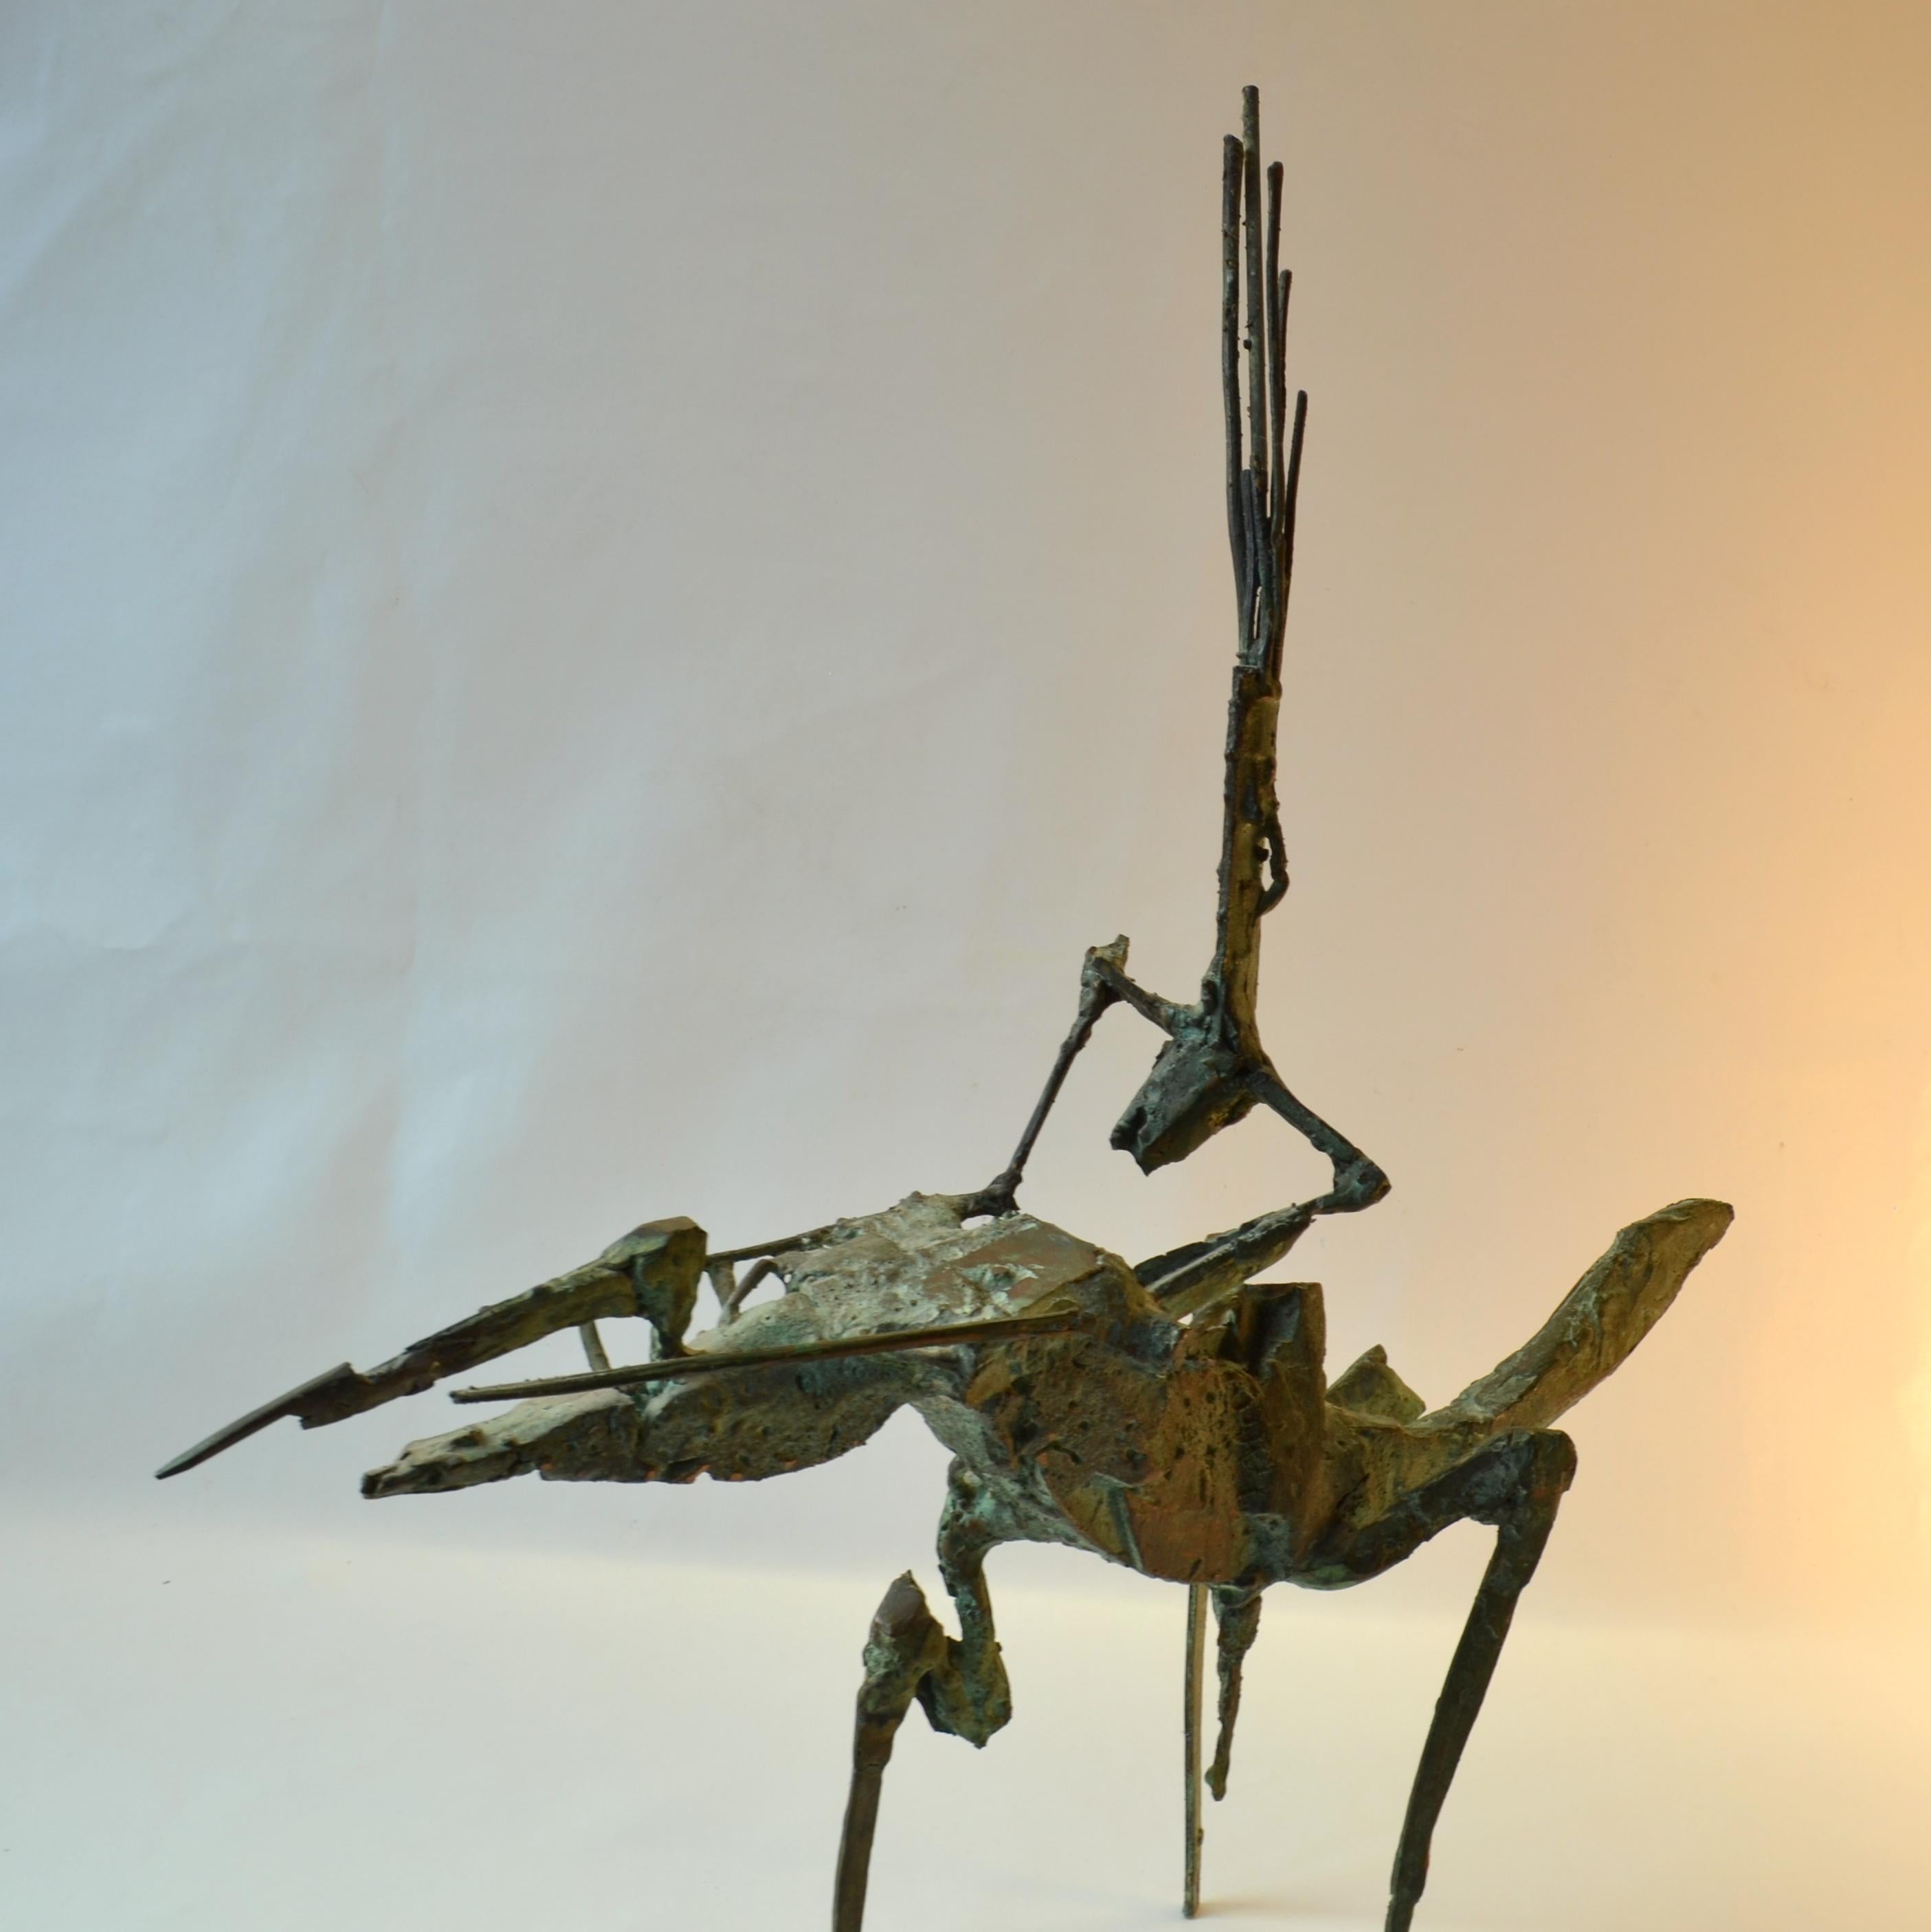 Brutalistische, fast futuristische Bronzeskulptur eines Akrobaten im Handstand auf einem Pferd des niederländischen Künstlers Jacobs, ca. 1960-1970. Die graugrüne Patina verstärkt den surrealen Ausdruck. Das Pferd steht frei auf 3 Beinen und ist